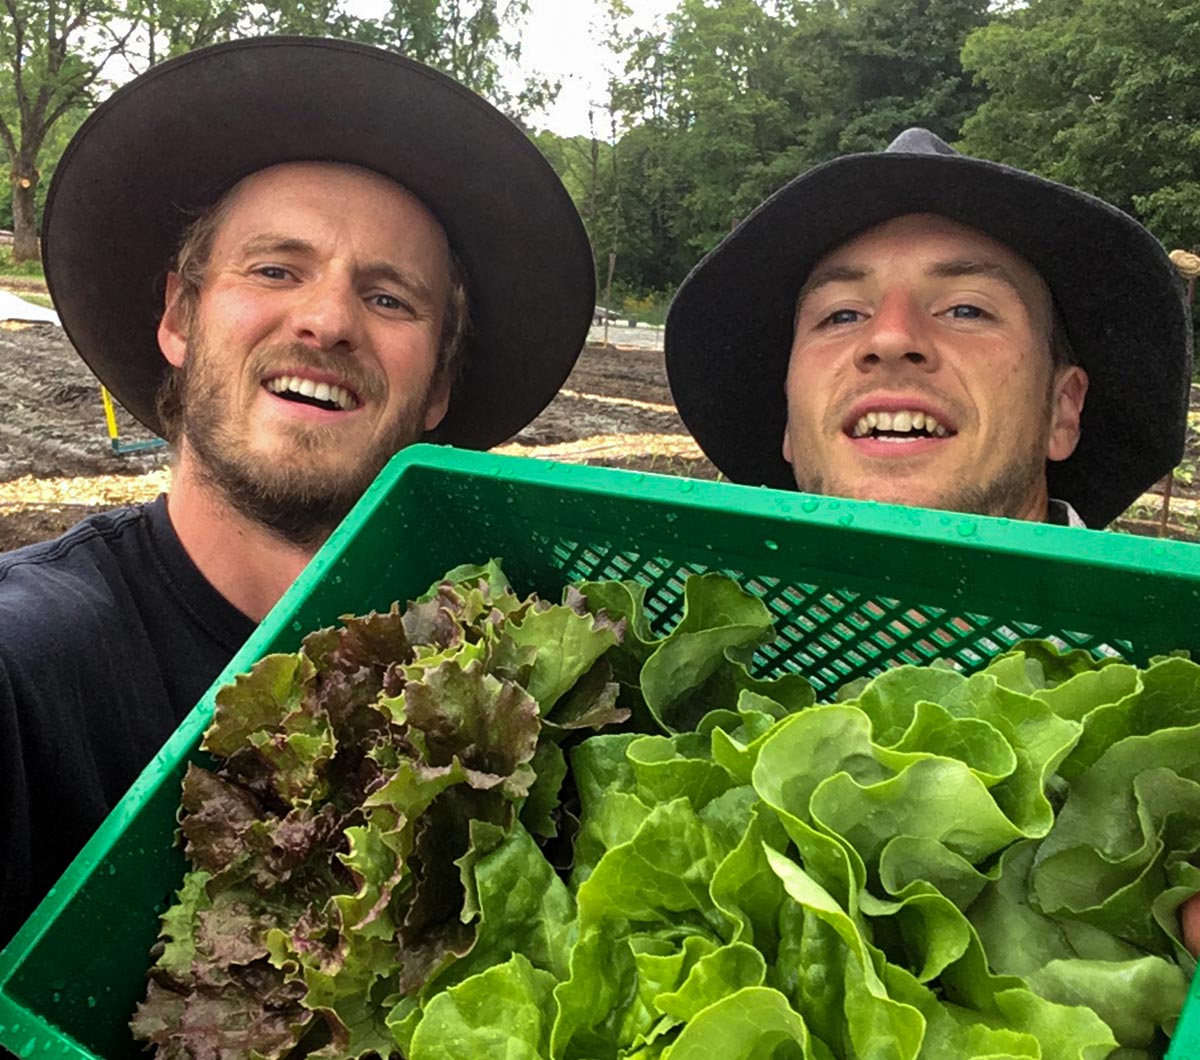 Die Gründer demonstrieren stolz ihre Gemüsekiste mit frischem Salat